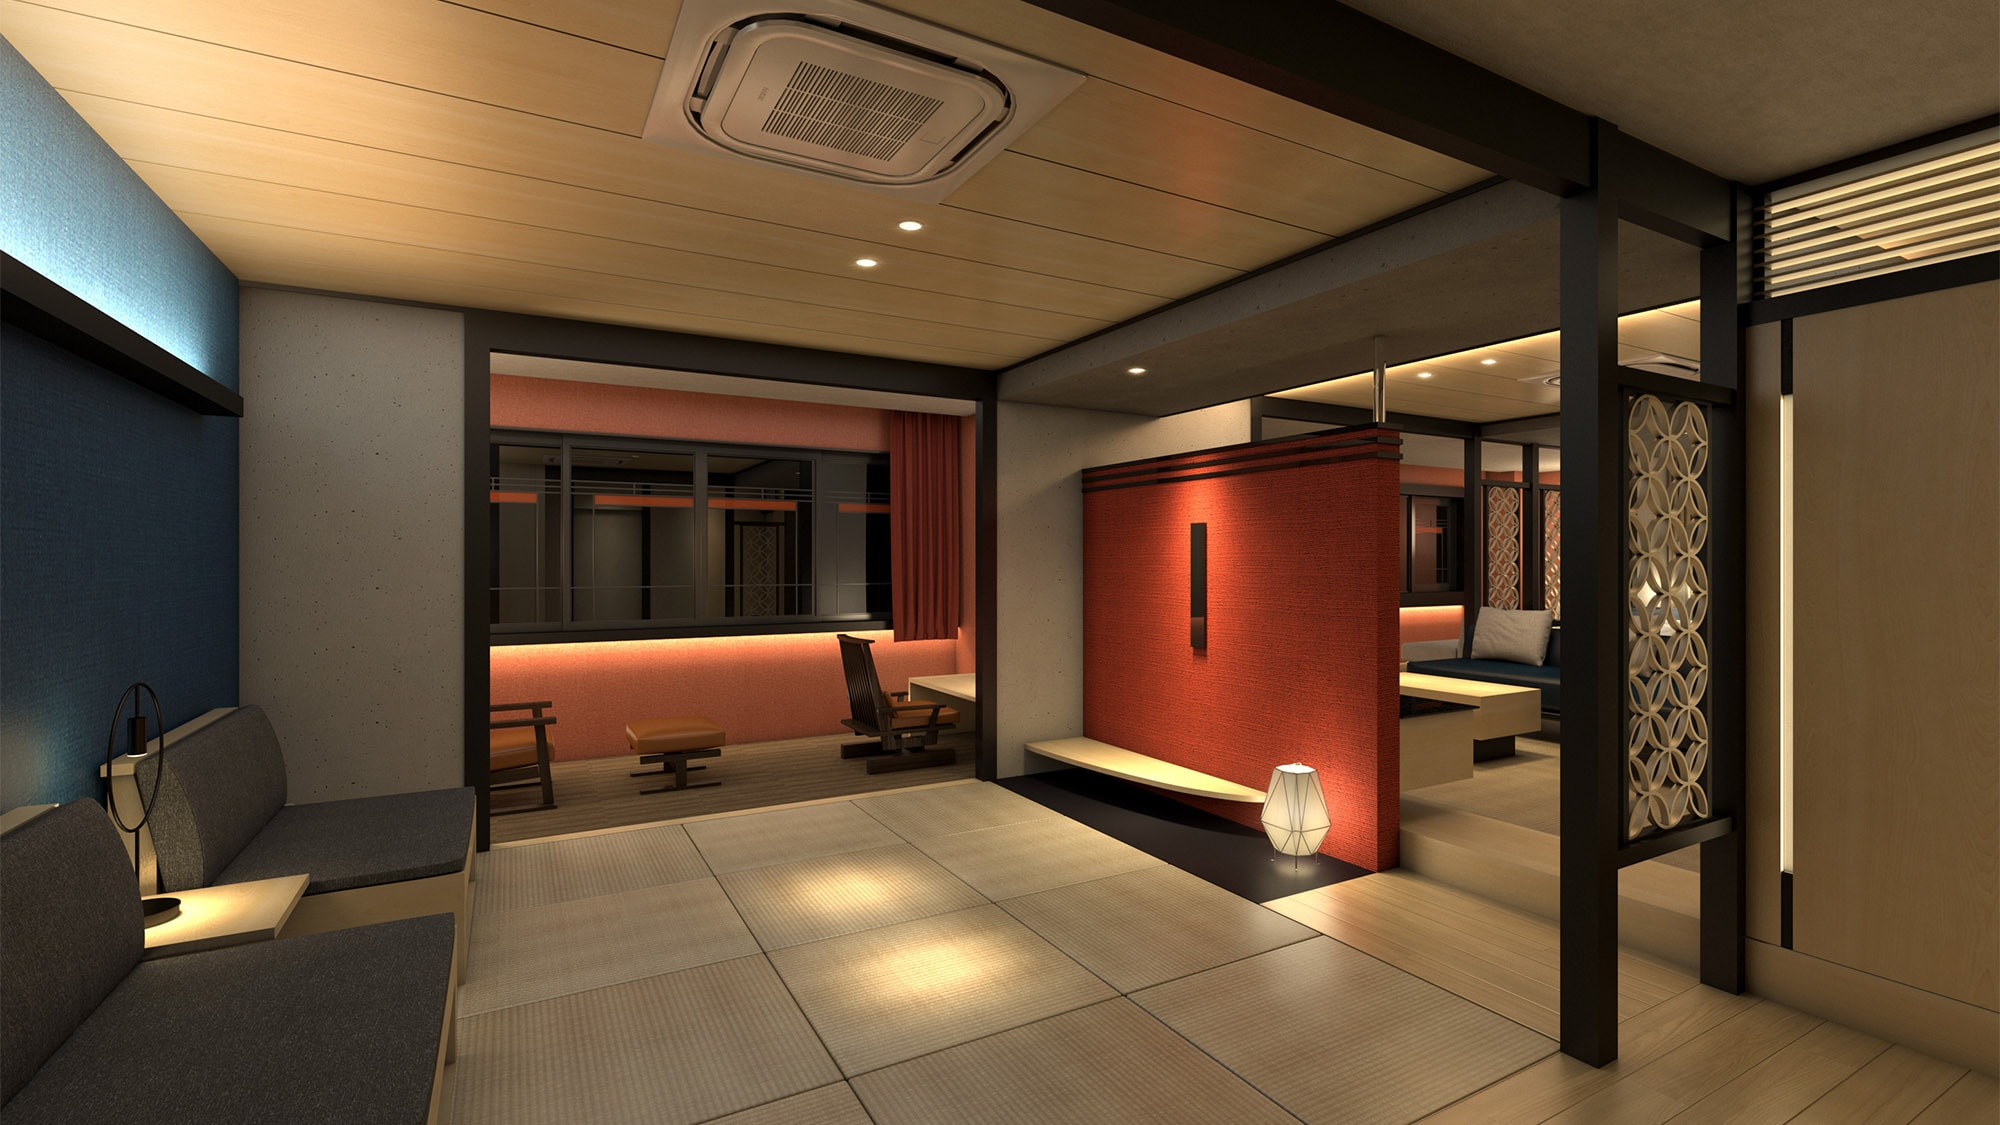 ・ ◆ 连续两个房间的特价房 ◆ 2021年新设！日式和西式房间带客厅100平方米